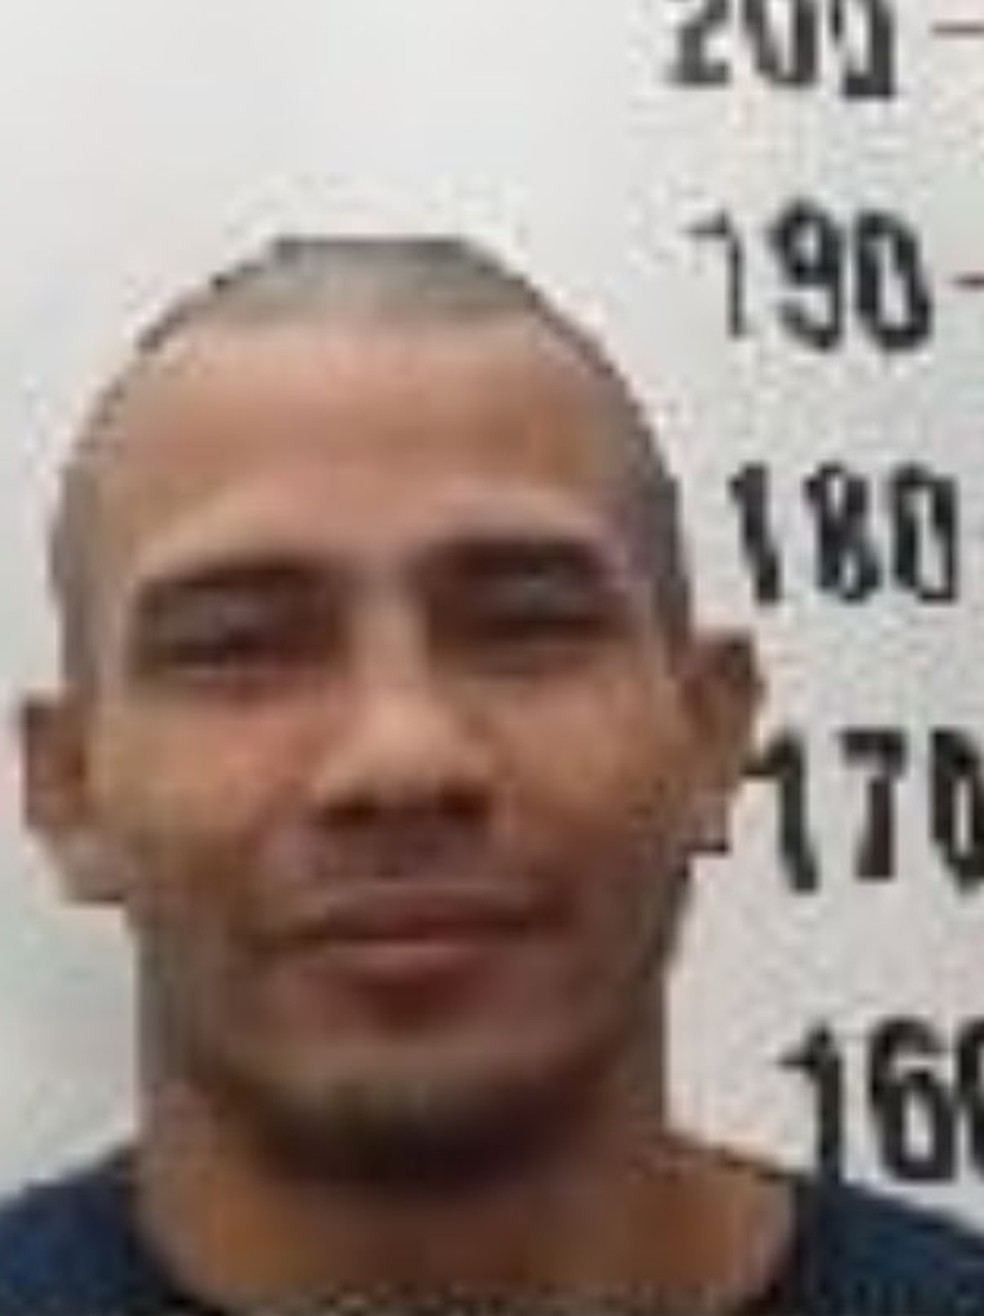  Naudinei de Arruda Martins foi recapturado nessa quarta-feira (6) — Foto: Divulgação